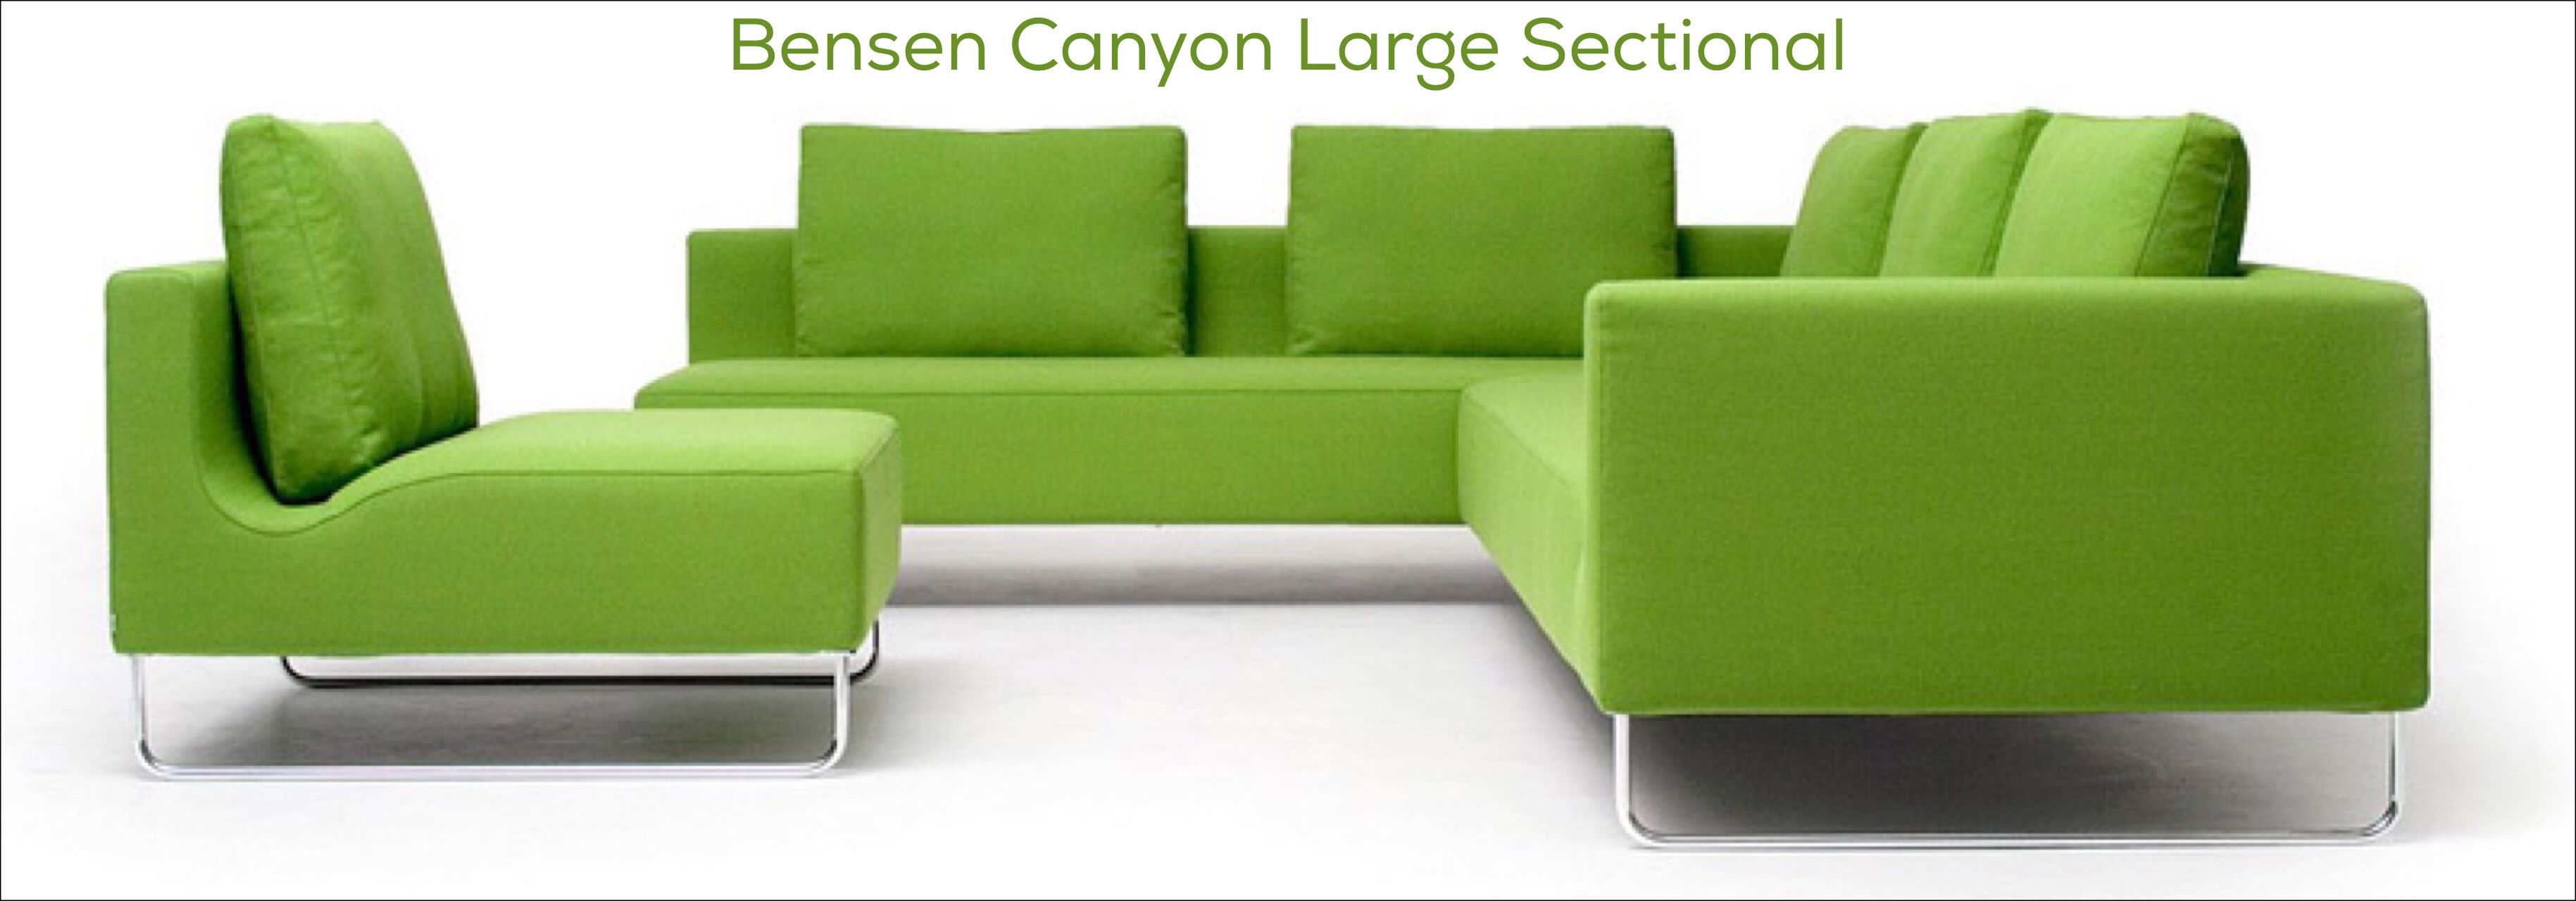 Bensen Canyon Large Sectional